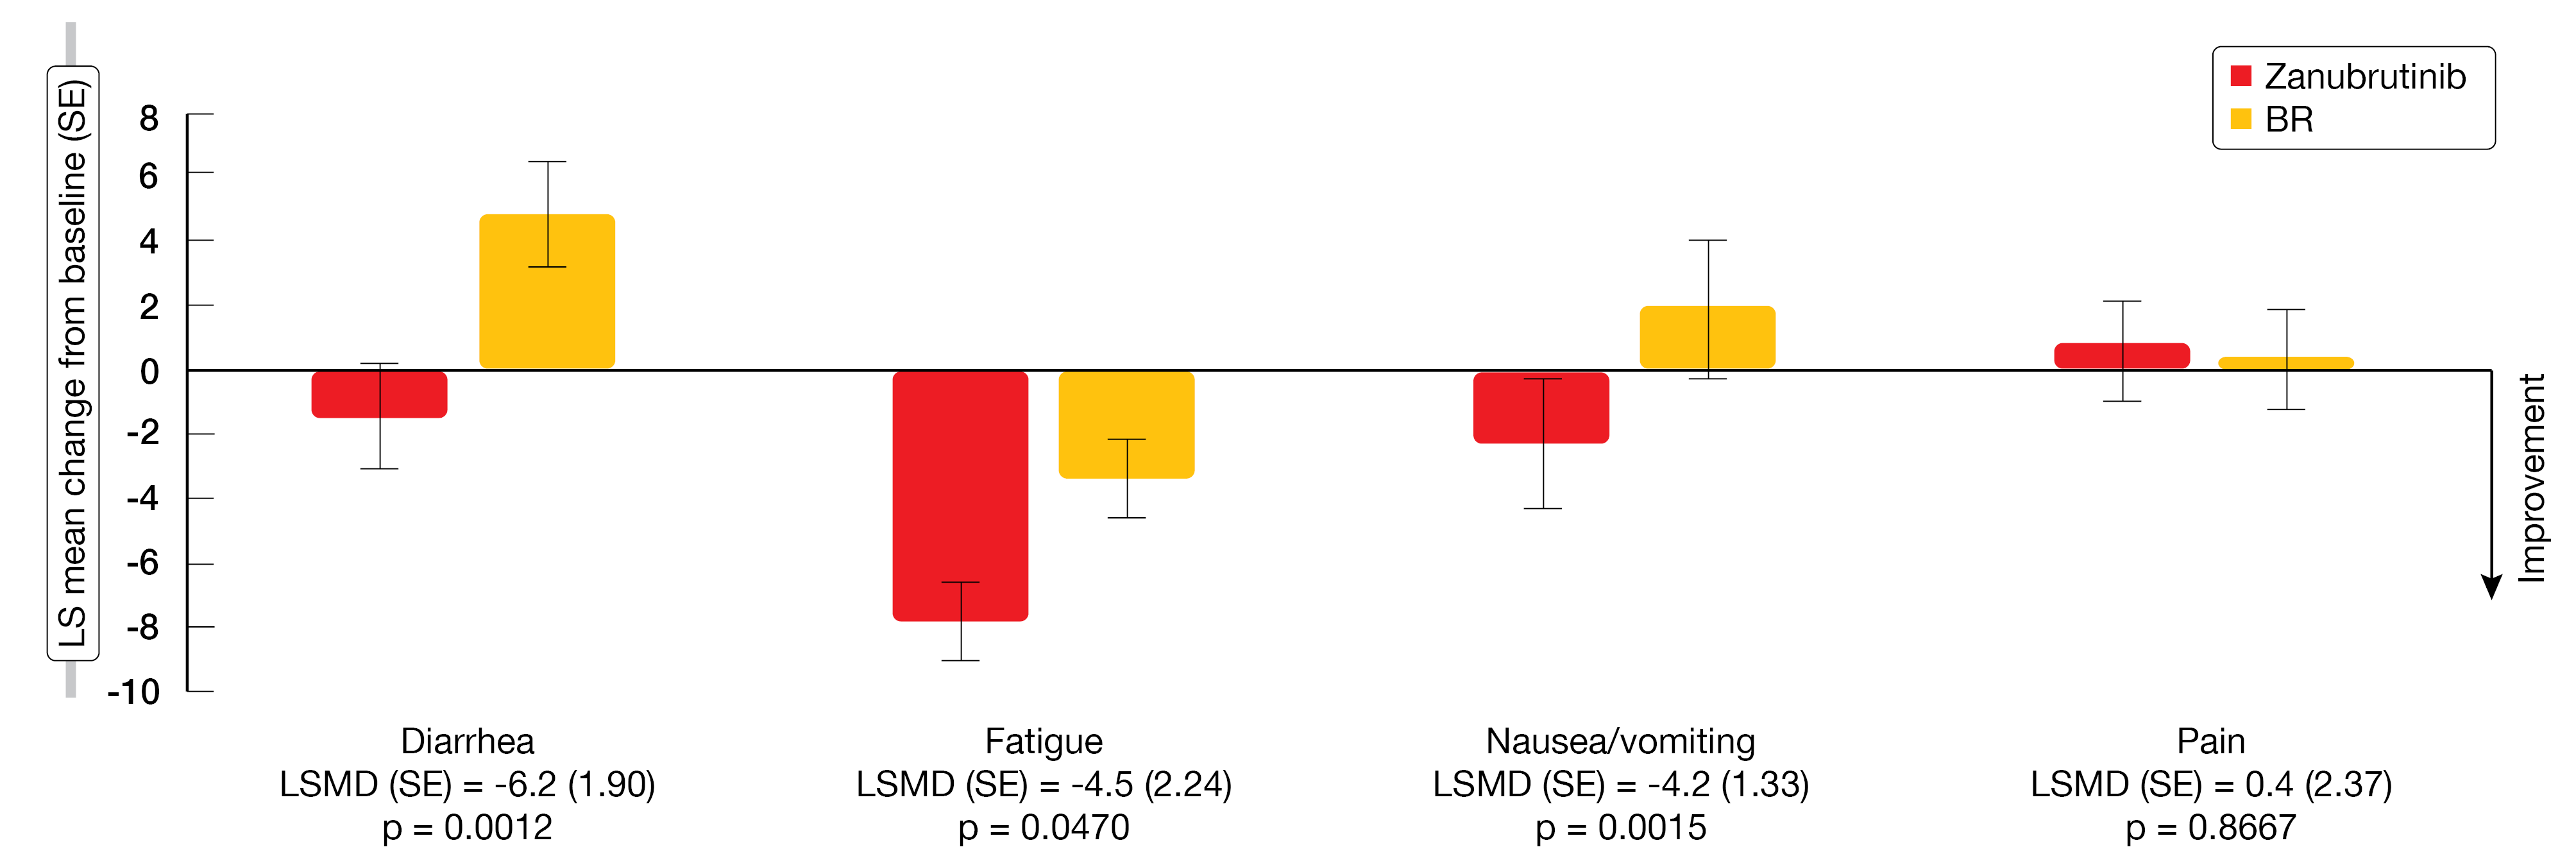 Figure 5: EORTC QLQ-C30 LS mean change from baseline in symptom scales at week 24 for zanubrutinib vs. bendamustine/rituximab